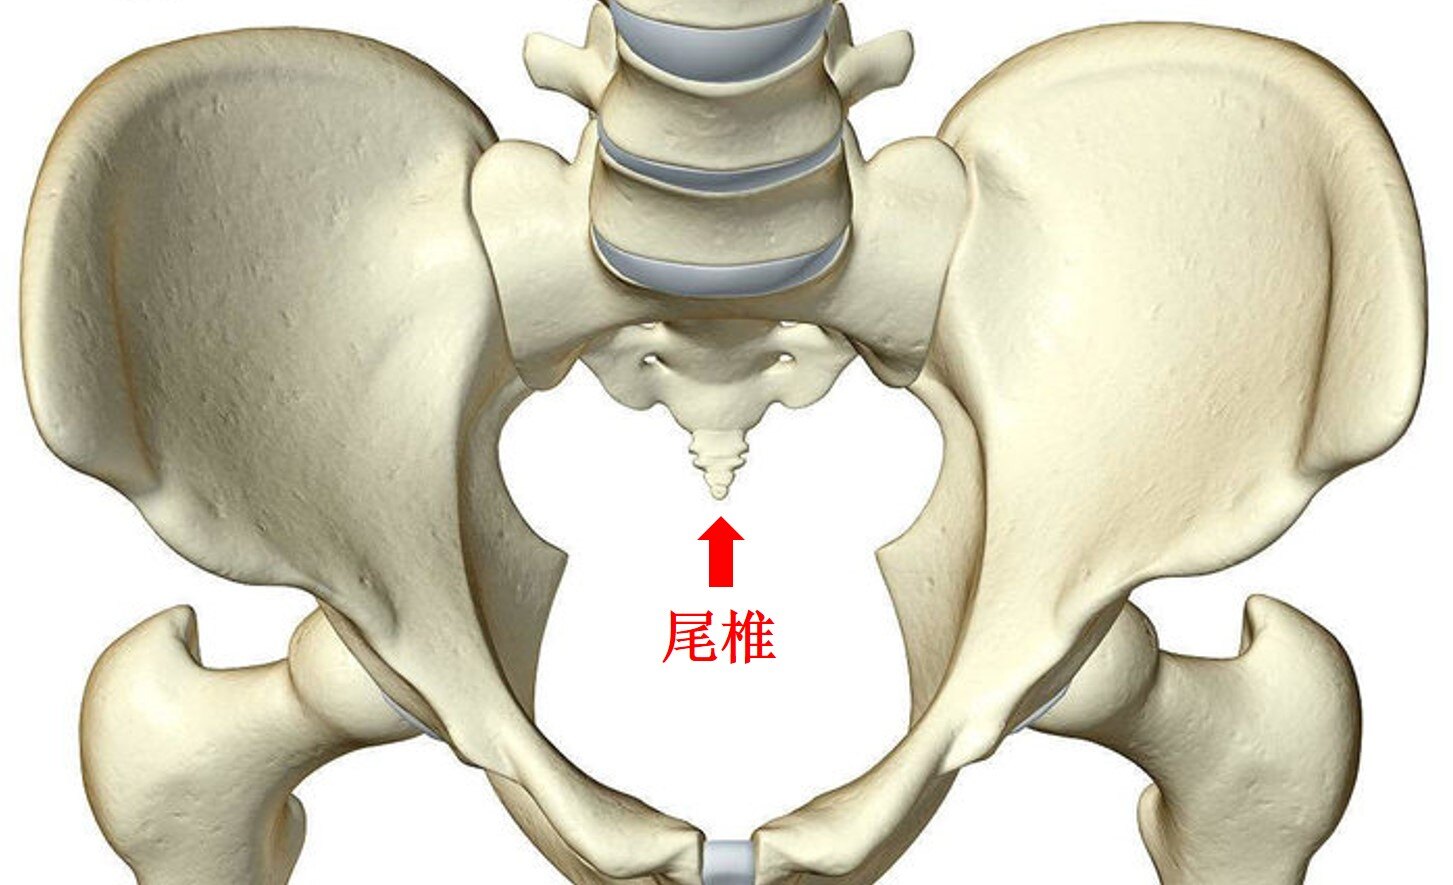 尾椎解剖图及结构图片